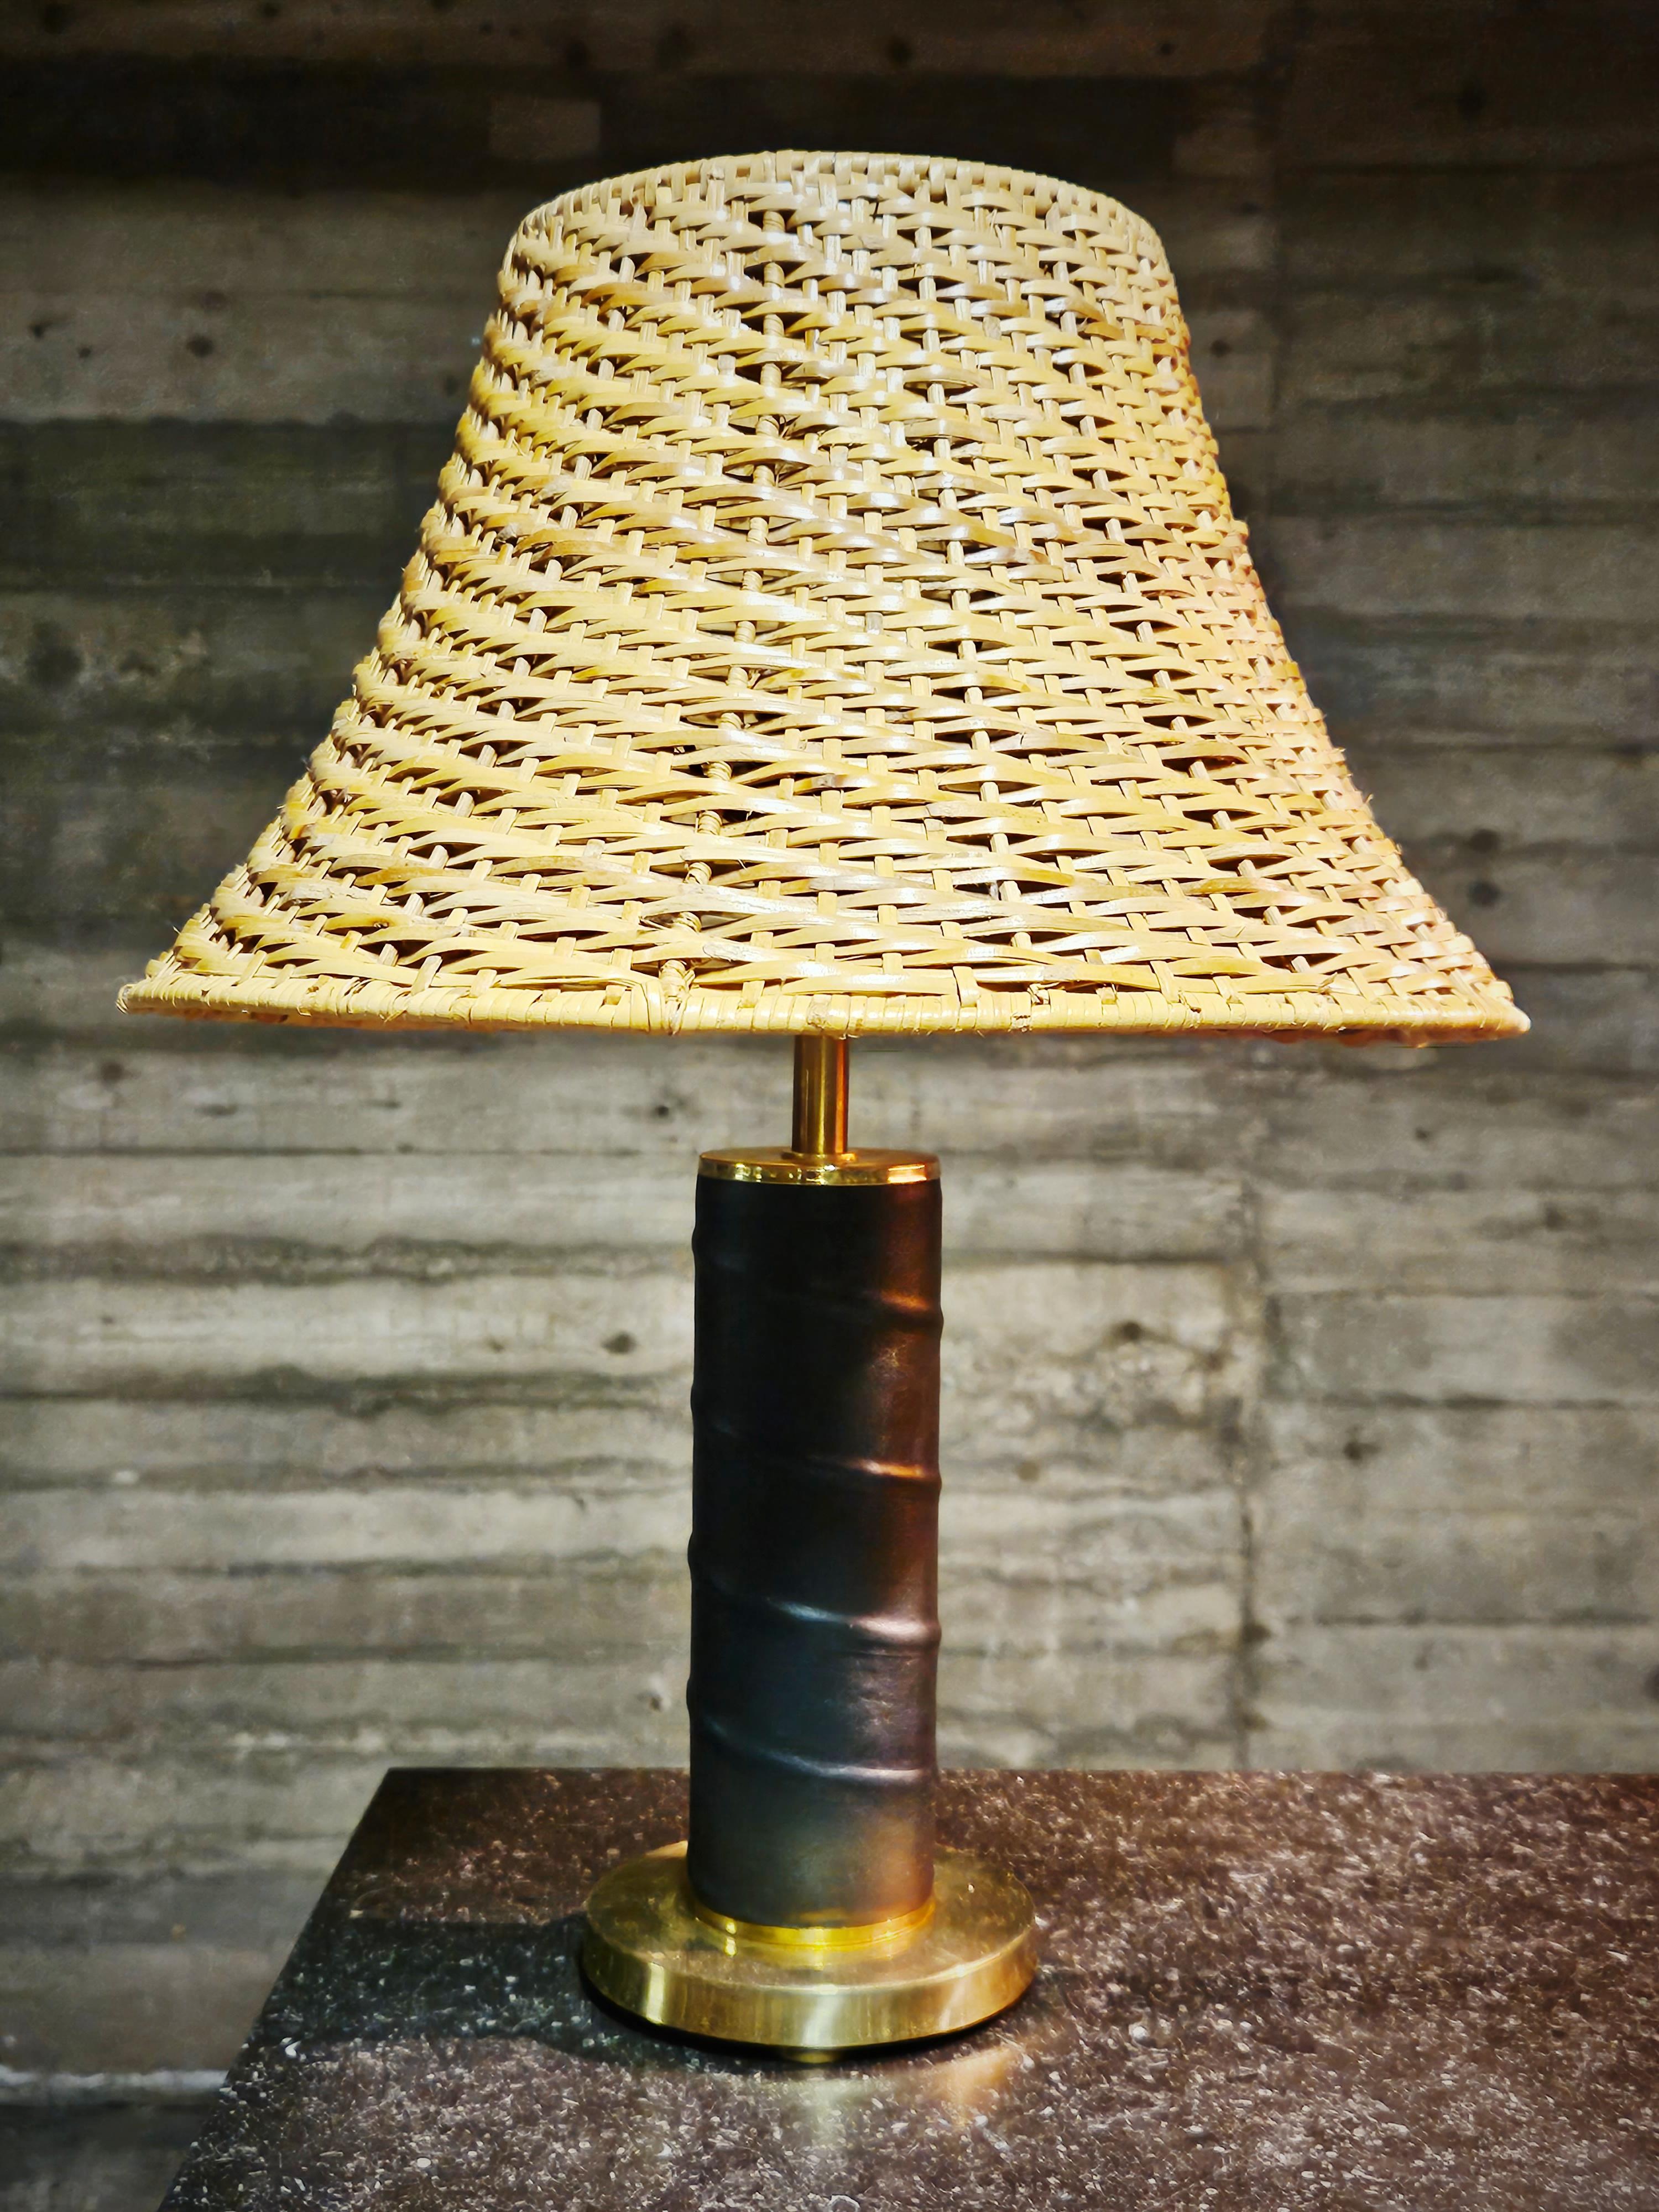 Schöne Tischlampen aus Dänemark aus der Mitte des 20. Jahrhunderts. Dicker Messinghals mit schwarzem, hochwertigem Leder umwickelt. 

Elegantes Design im Stil von Bertil Brisborg und der skandinavischen Moderne. 

Die Lampenschirme sind nicht